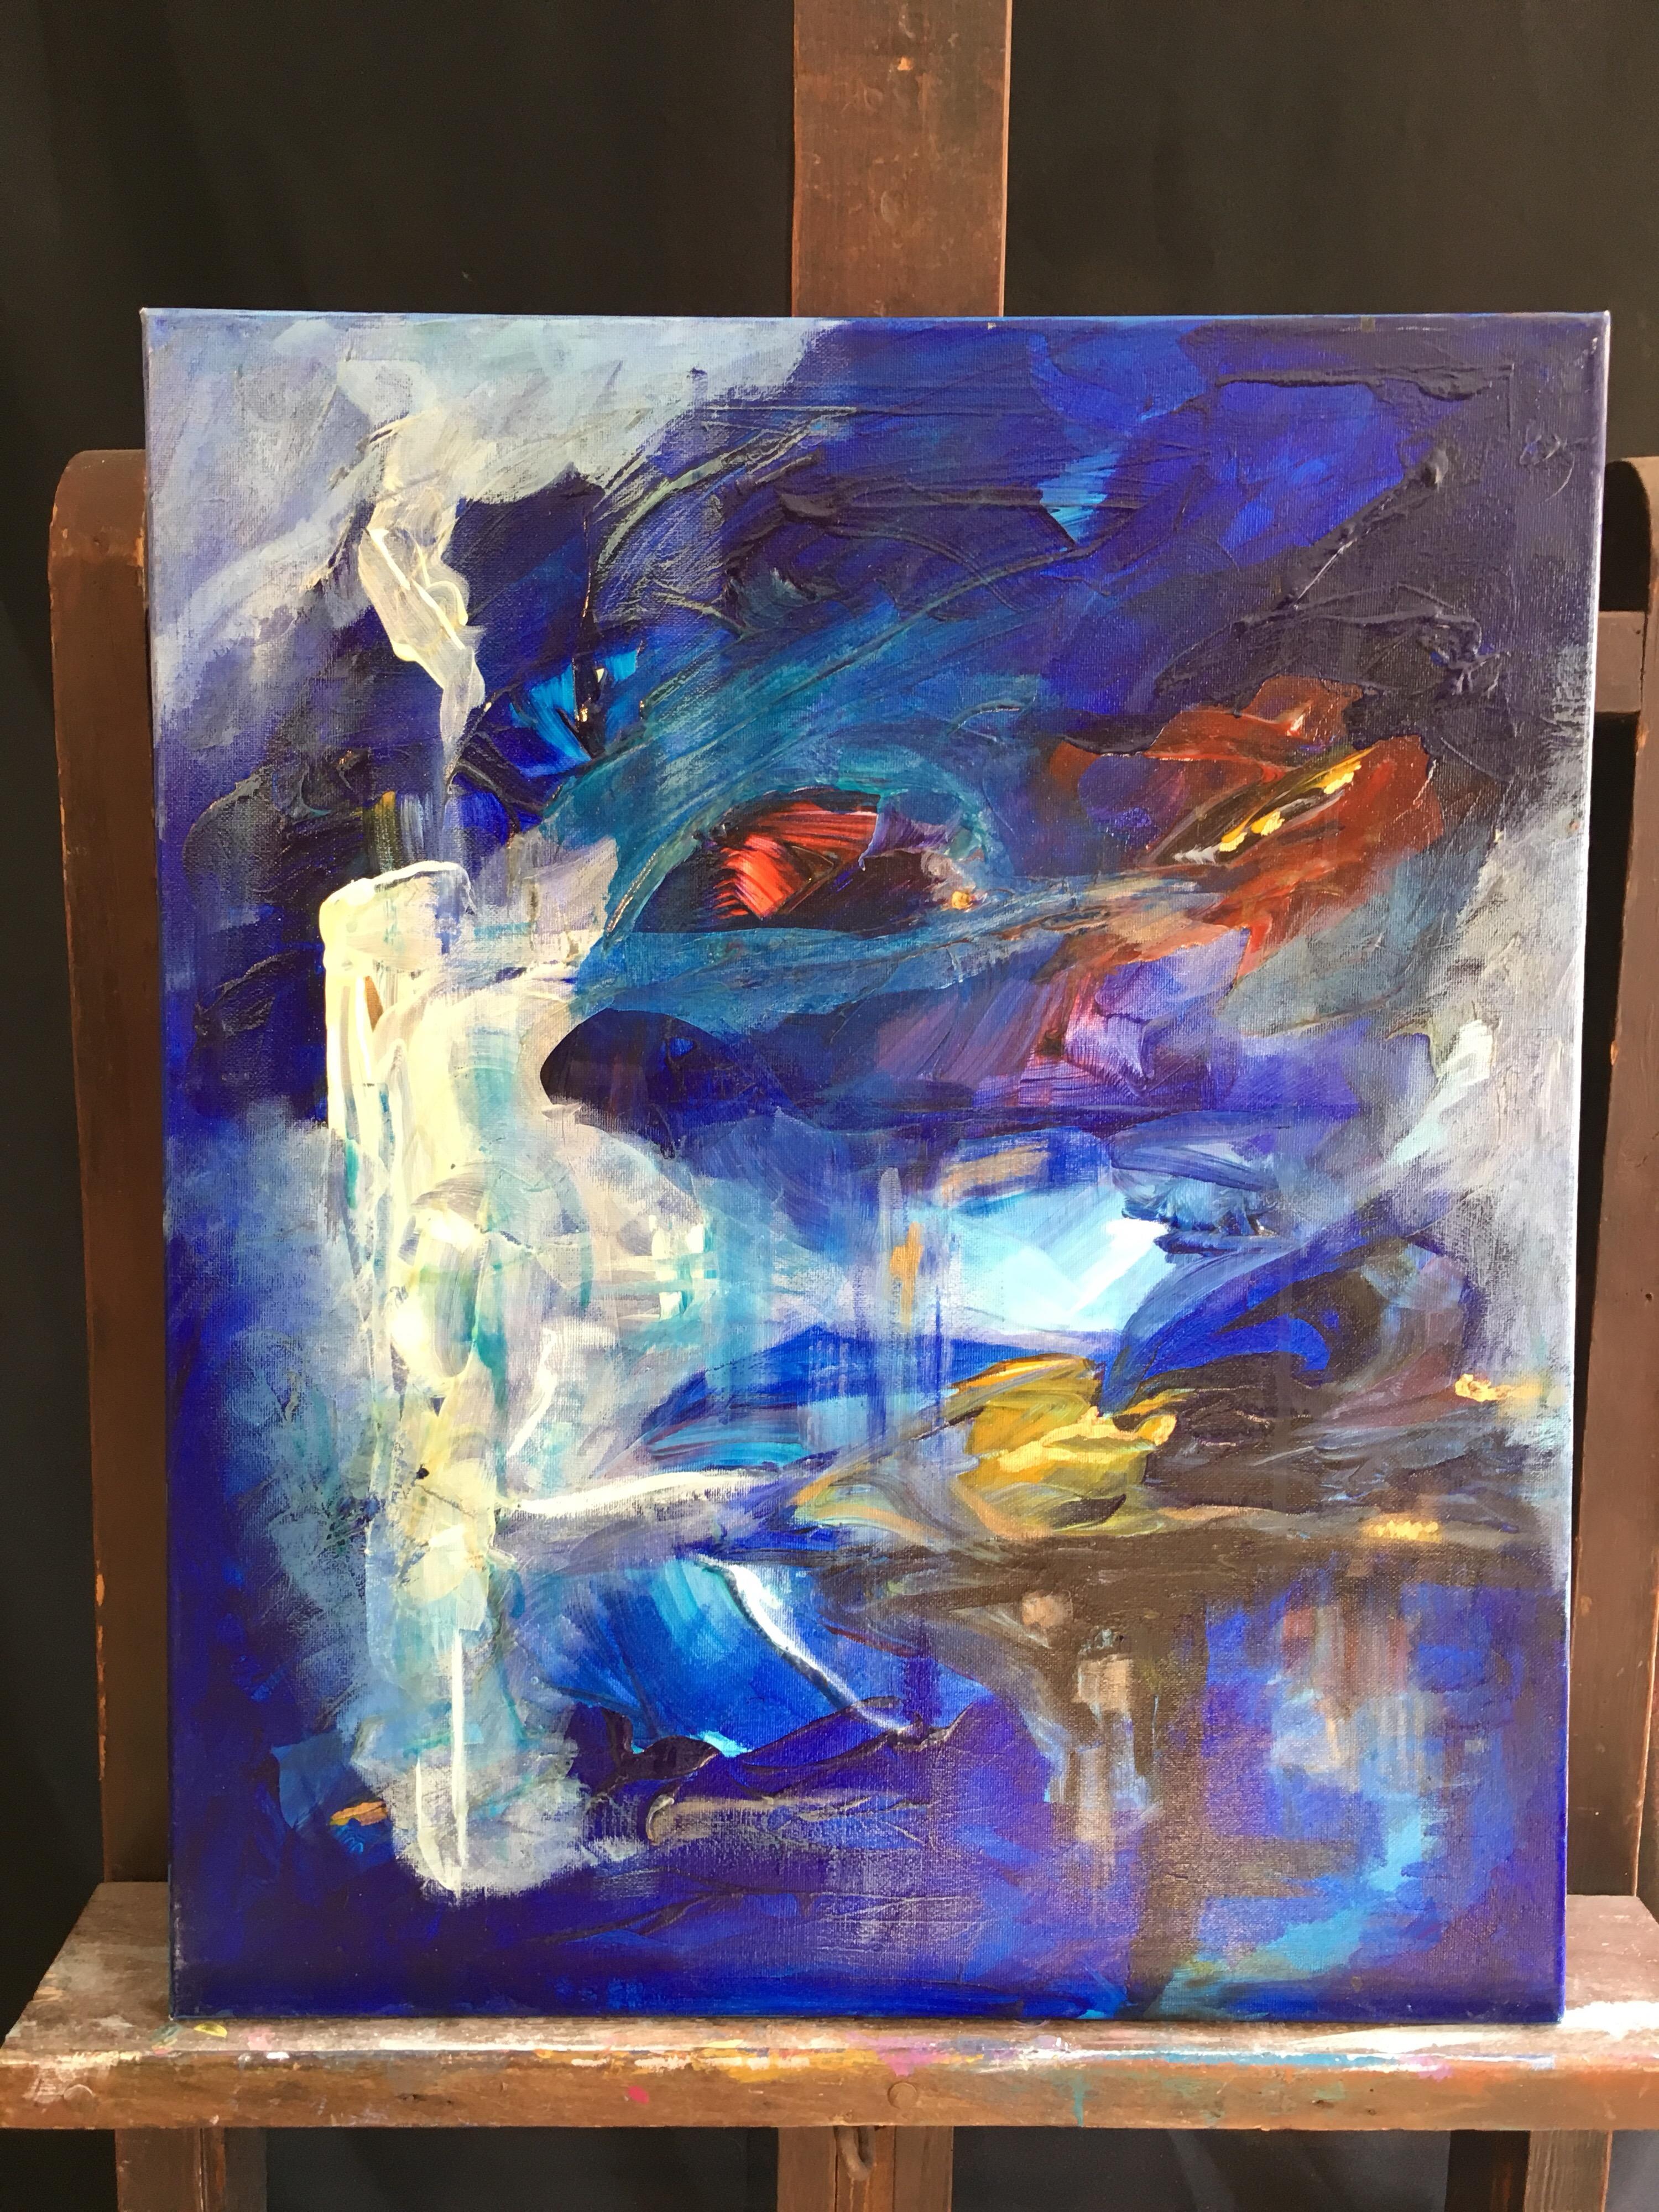 Blaue Welt, Abstraktes Ölgemälde, Signiert (Abstrakter Expressionismus), Painting, von Unknown